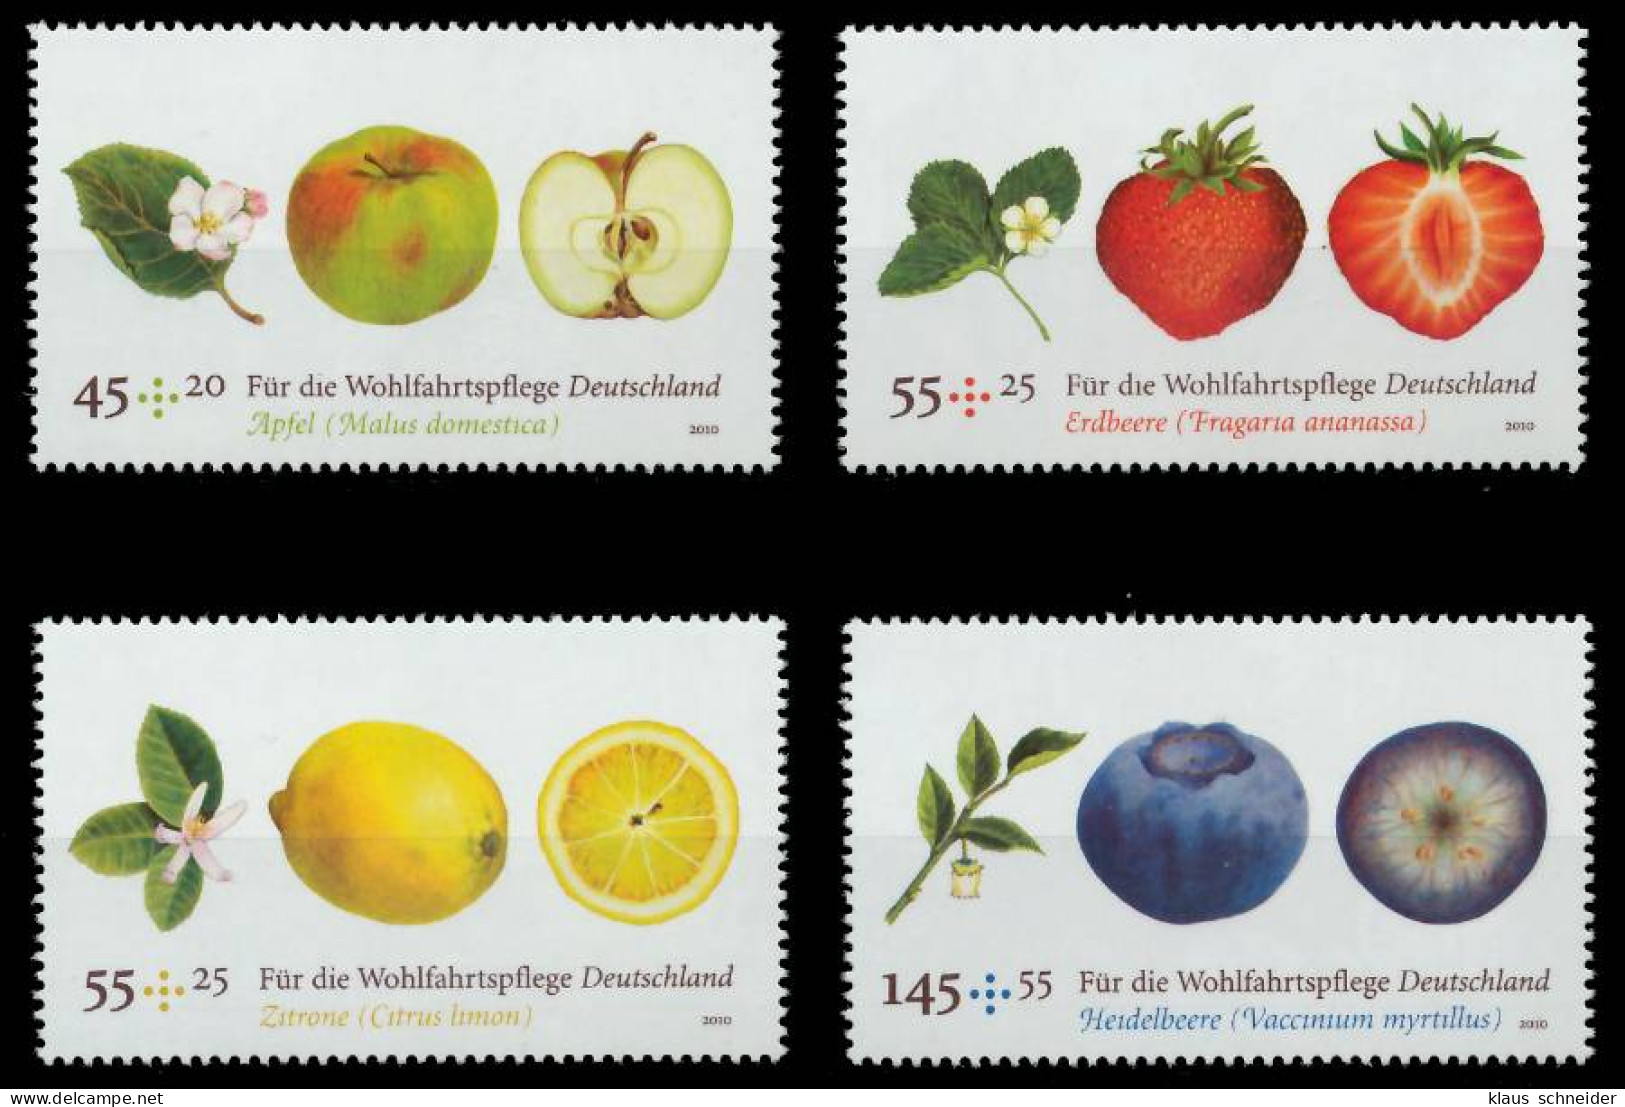 BRD BUND 2010 Nr 2769-2772 Postfrisch S3BF9FA - Unused Stamps